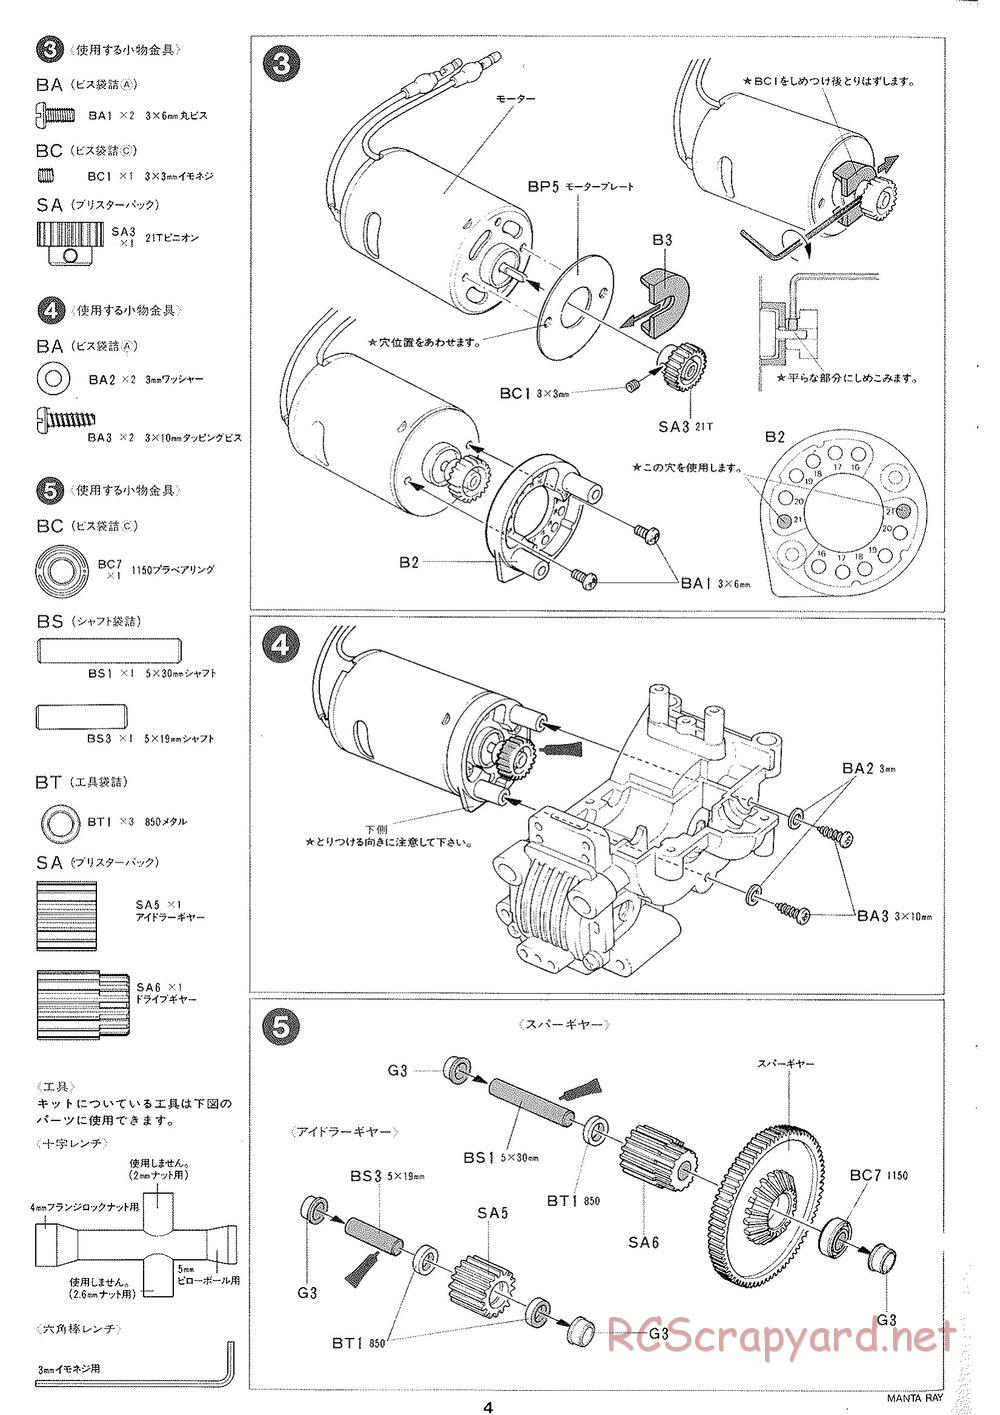 Tamiya - Manta Ray 2005 - DF-01 Chassis - Manual - Page 5